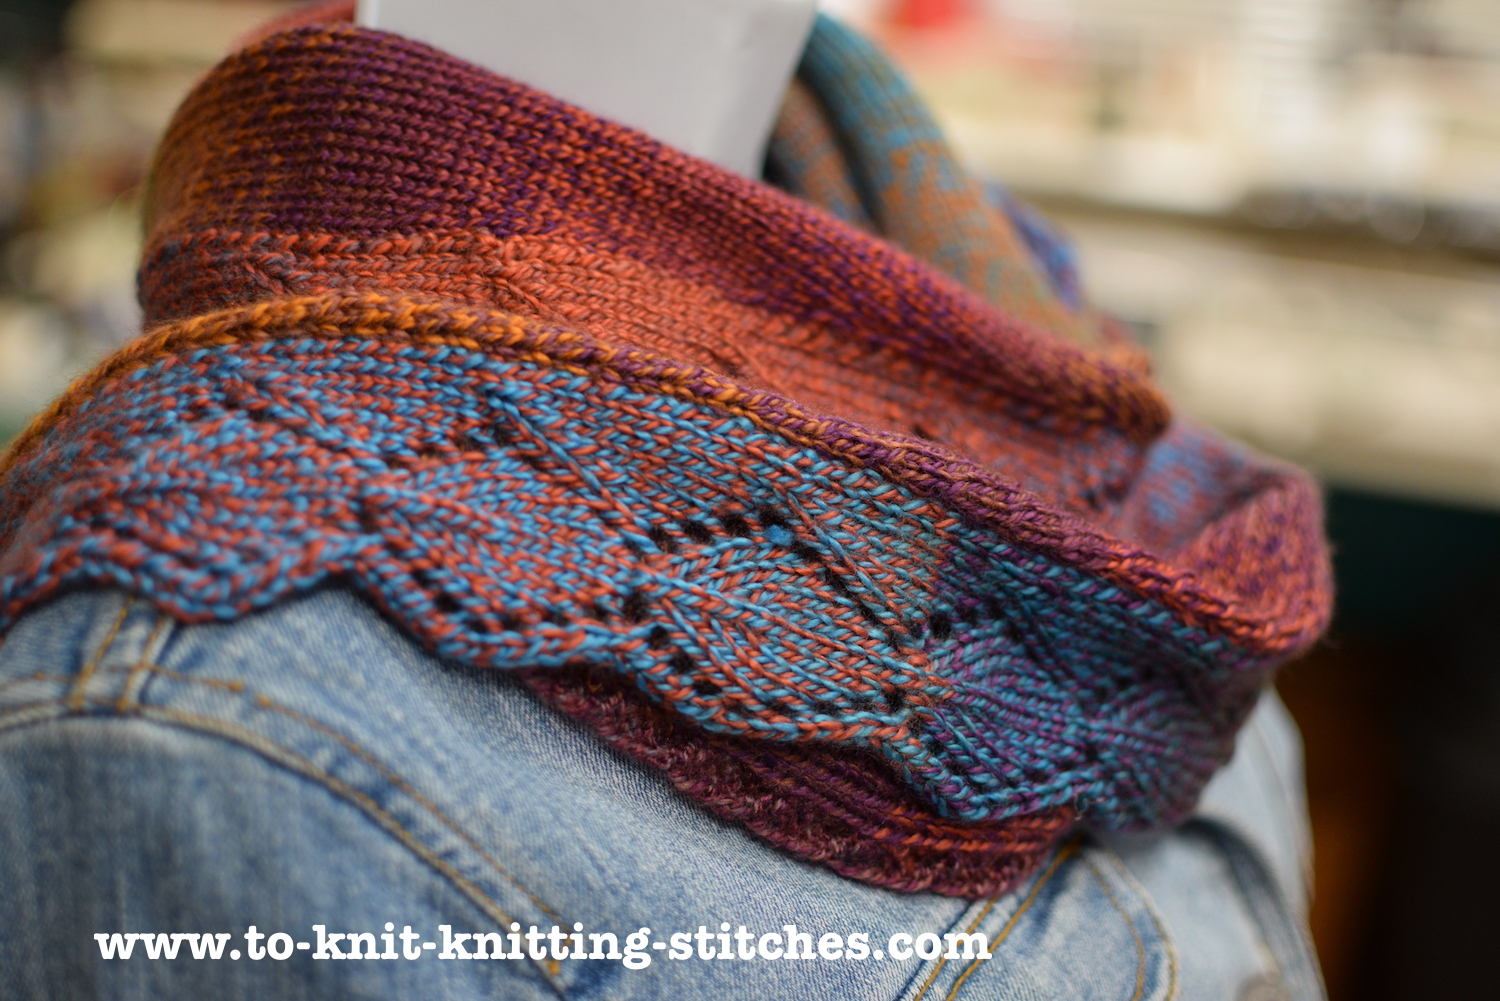 Hand Knitting Book  Knitting books, Hand knitting, Knitting